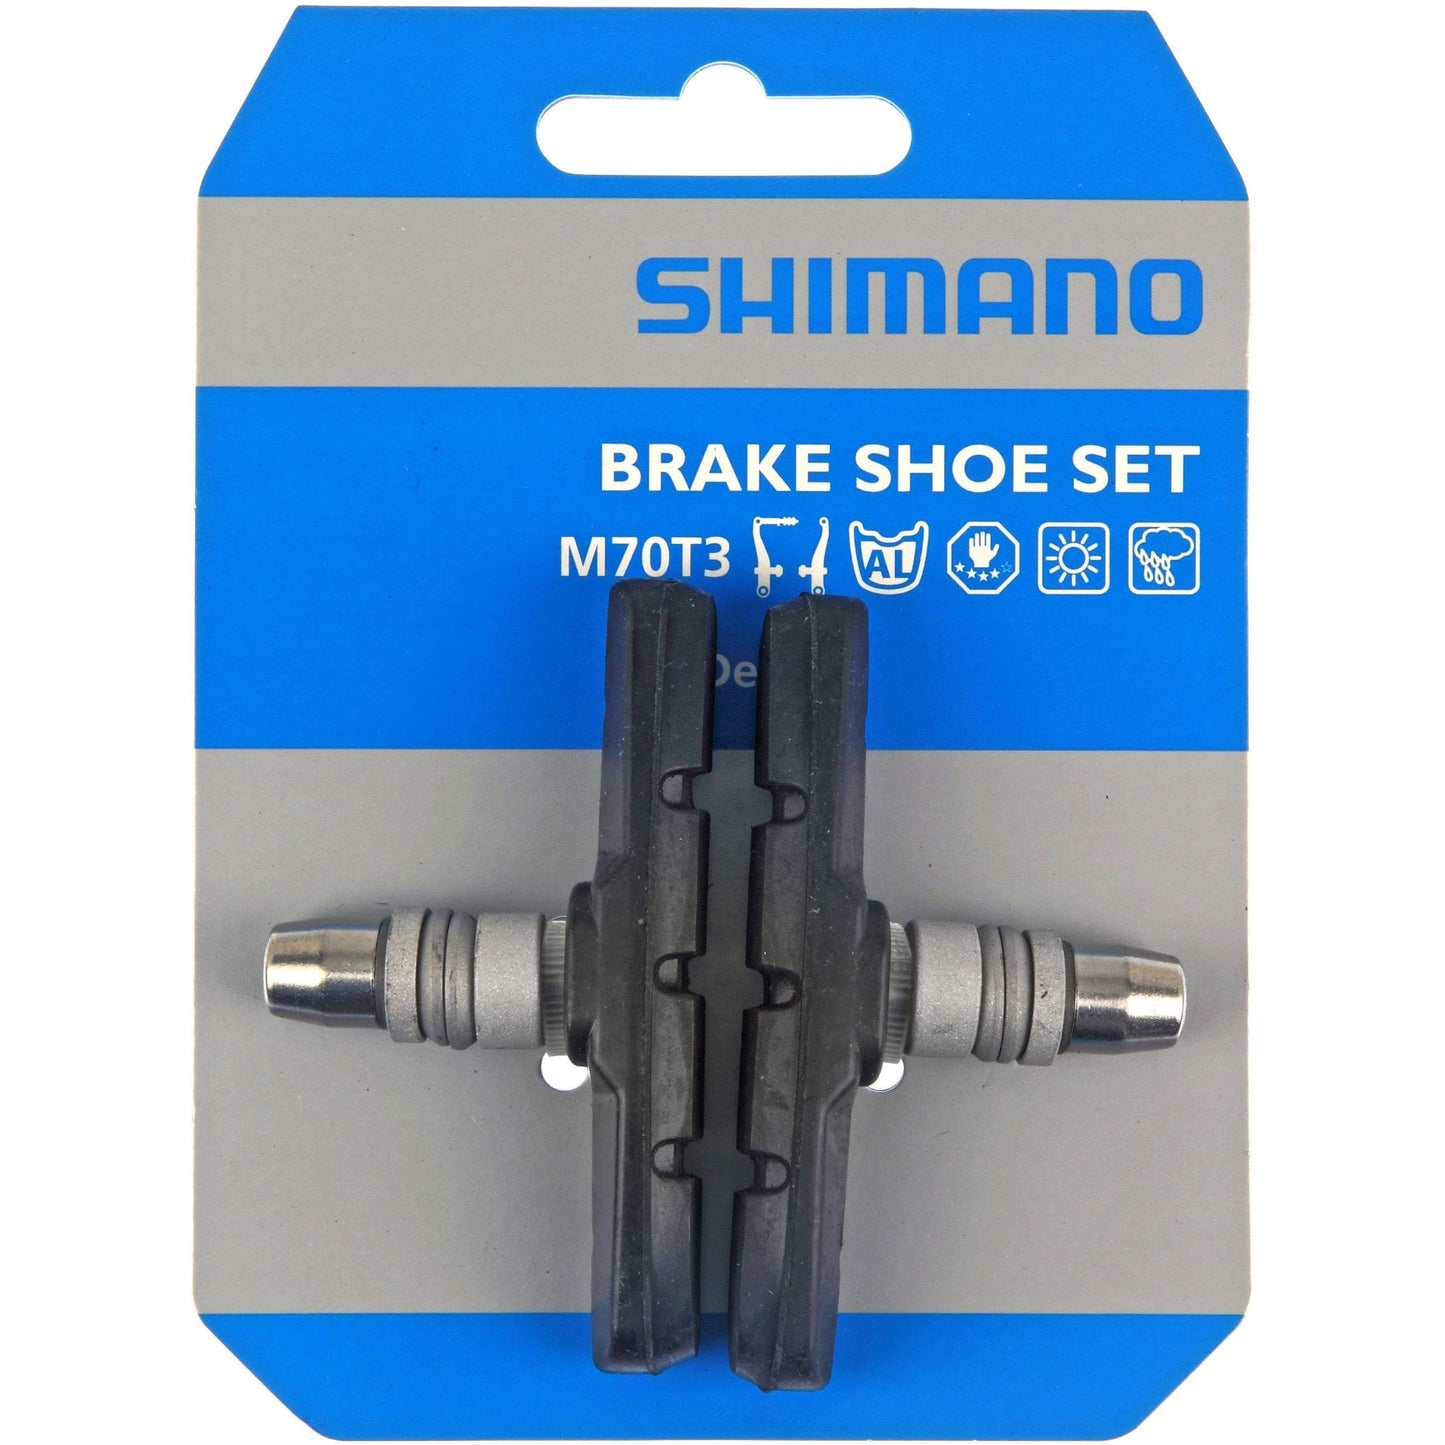 SHIMANO M70T3 / M600 BRAKE BLOCKS FOR LX/DEORE/ALIVIO V-BRAKES